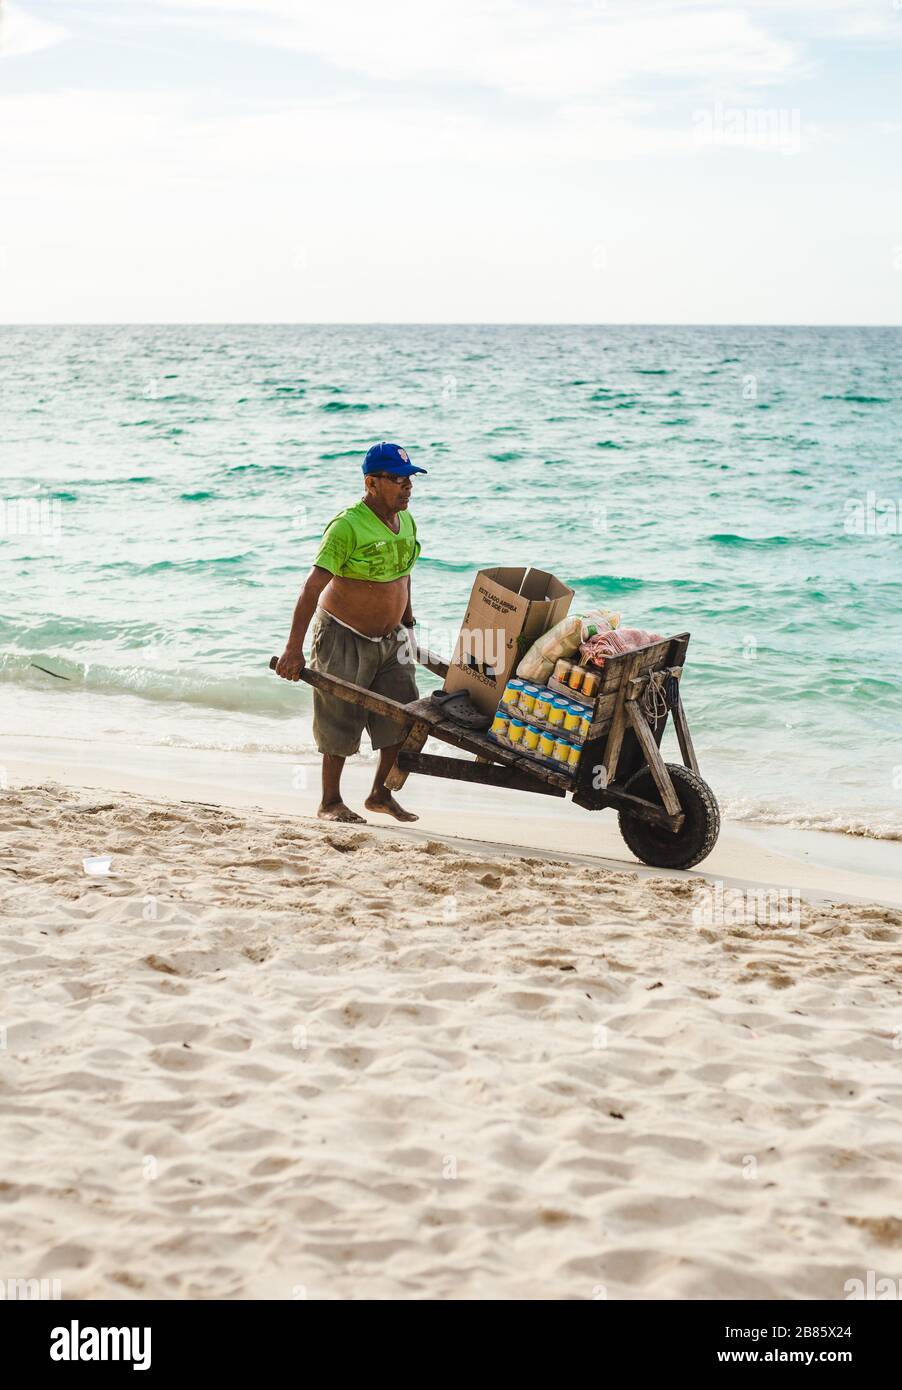 Le vendeur colombien local vend des boissons dans des boîtes de son brouette sur la plage d'Isla Baru, près de Carthagène, Colombie Banque D'Images